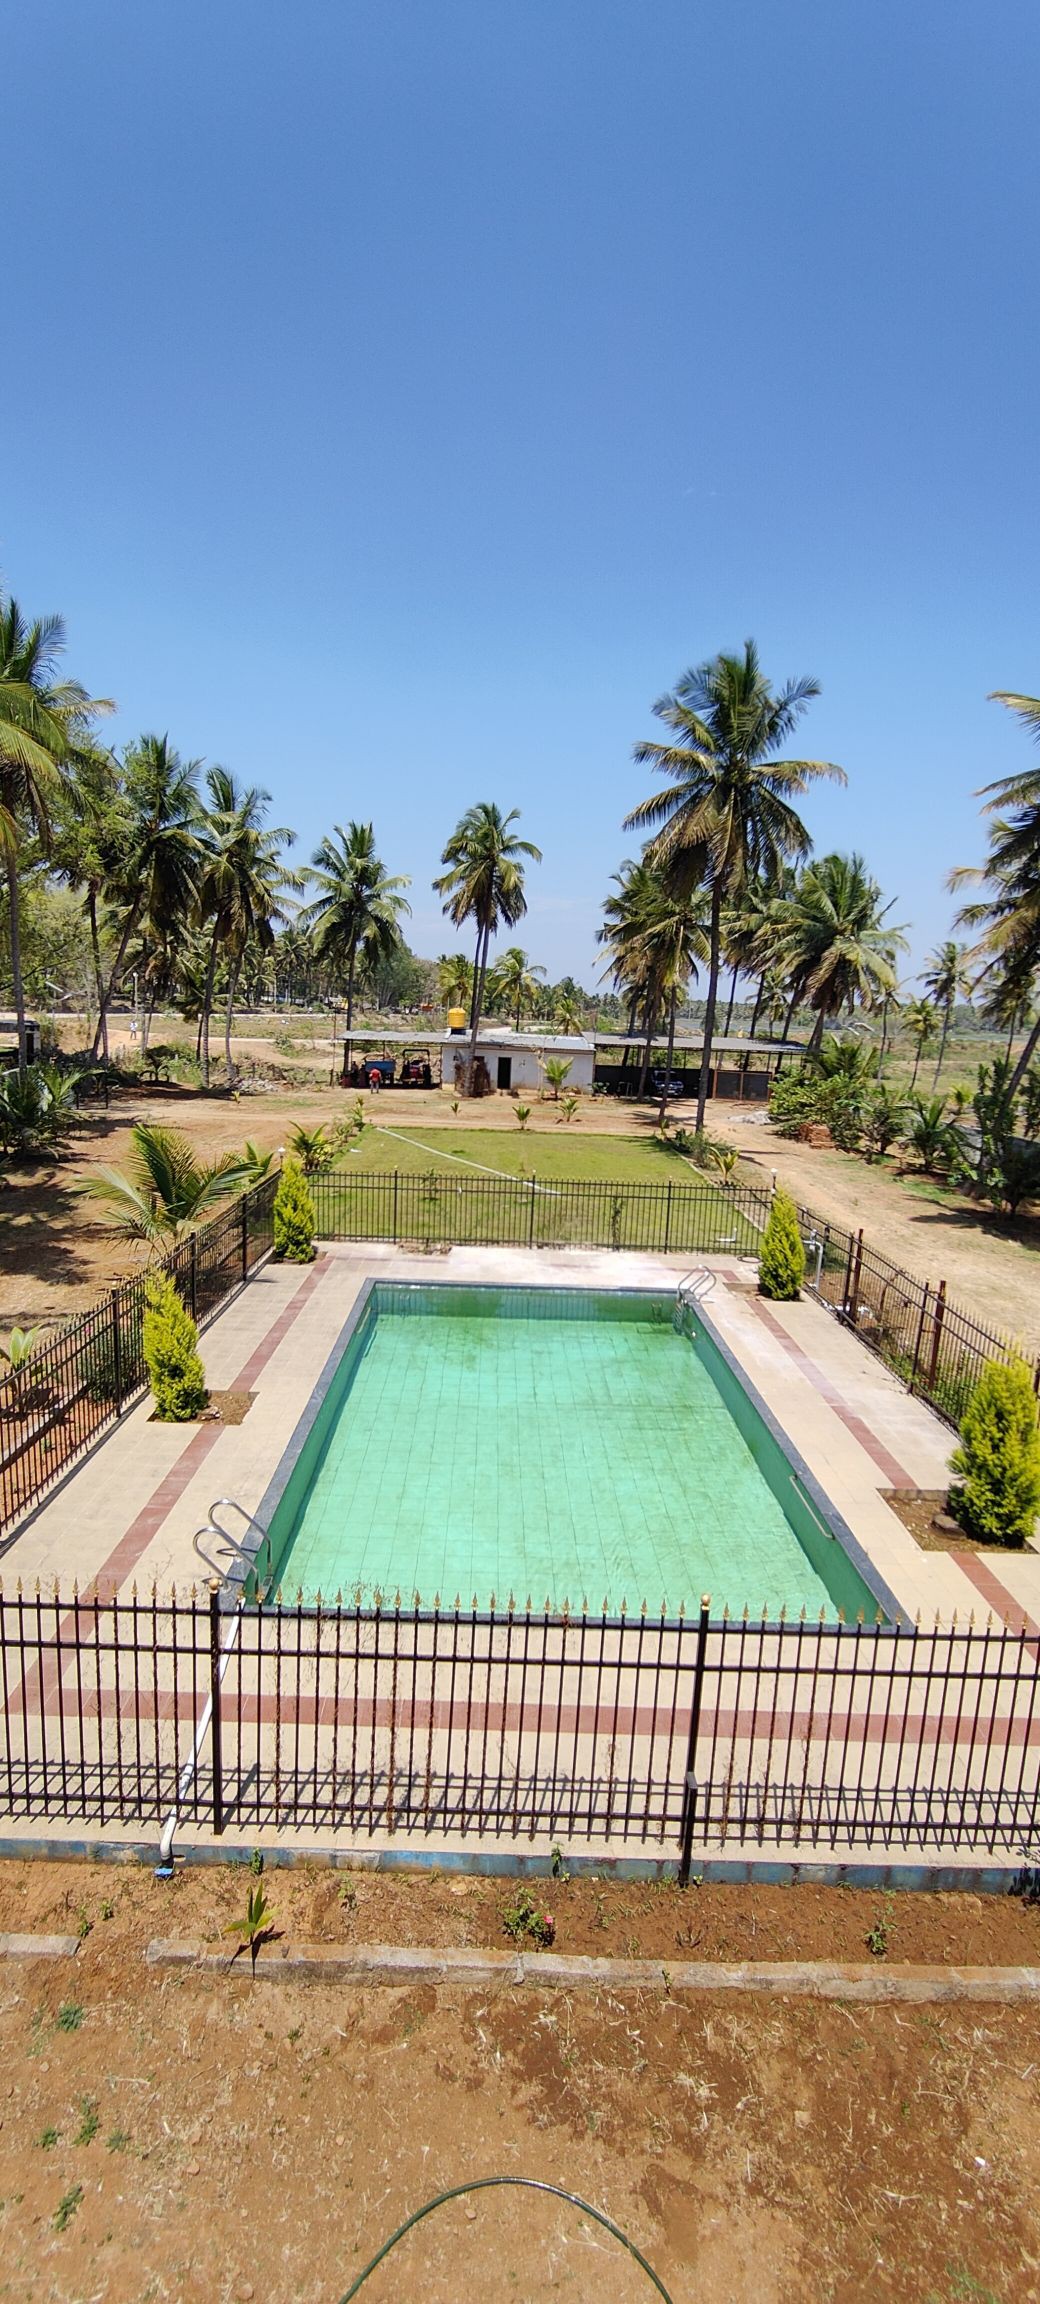 Celebrate Holi in a Private Pool Property!